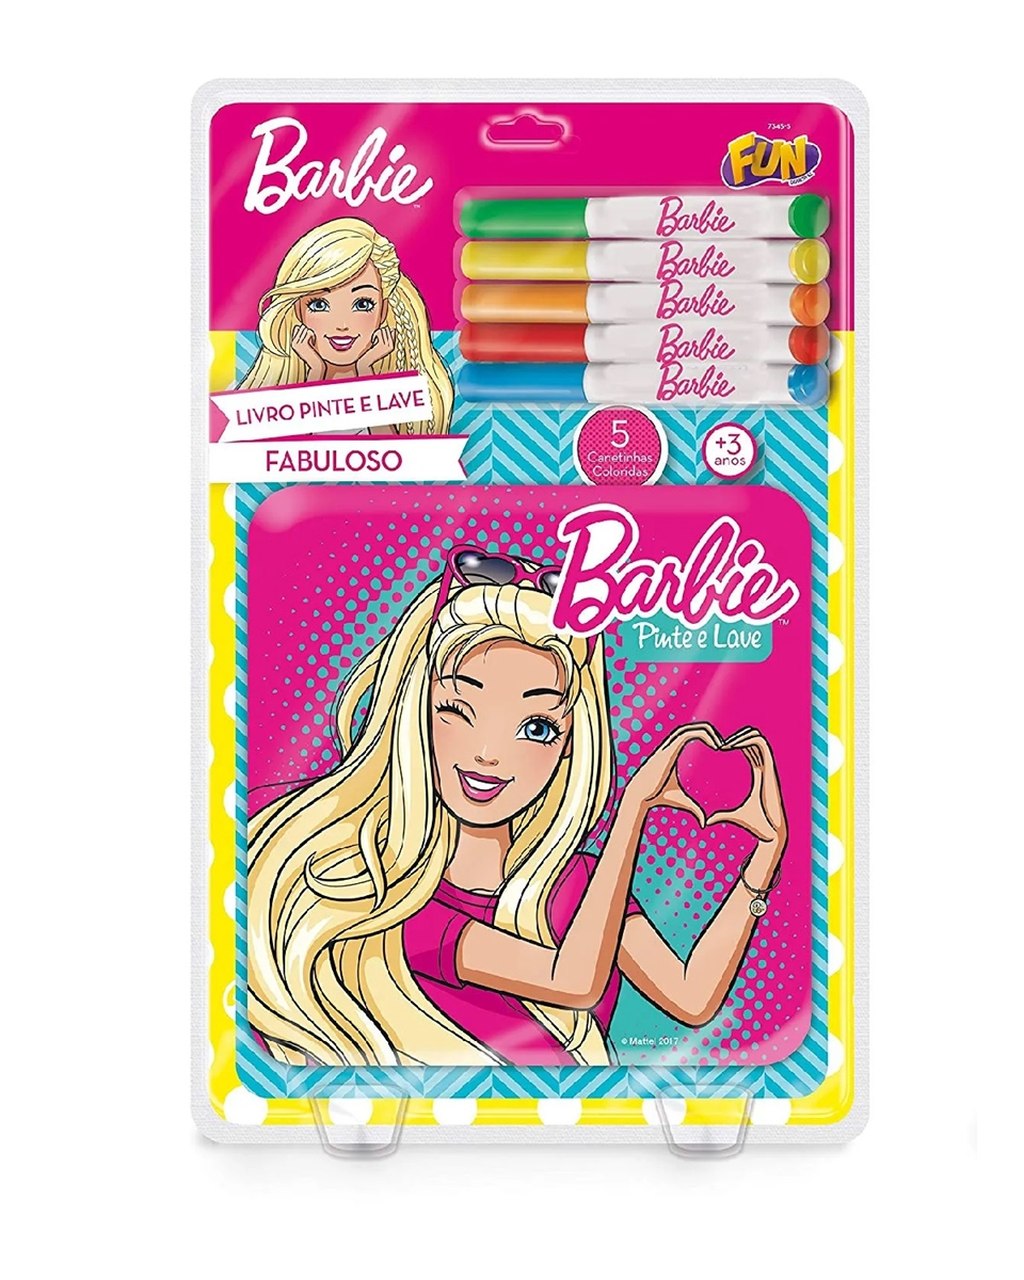 Barbie Livro Pinte E Lave Fabuloso - Fun F00164